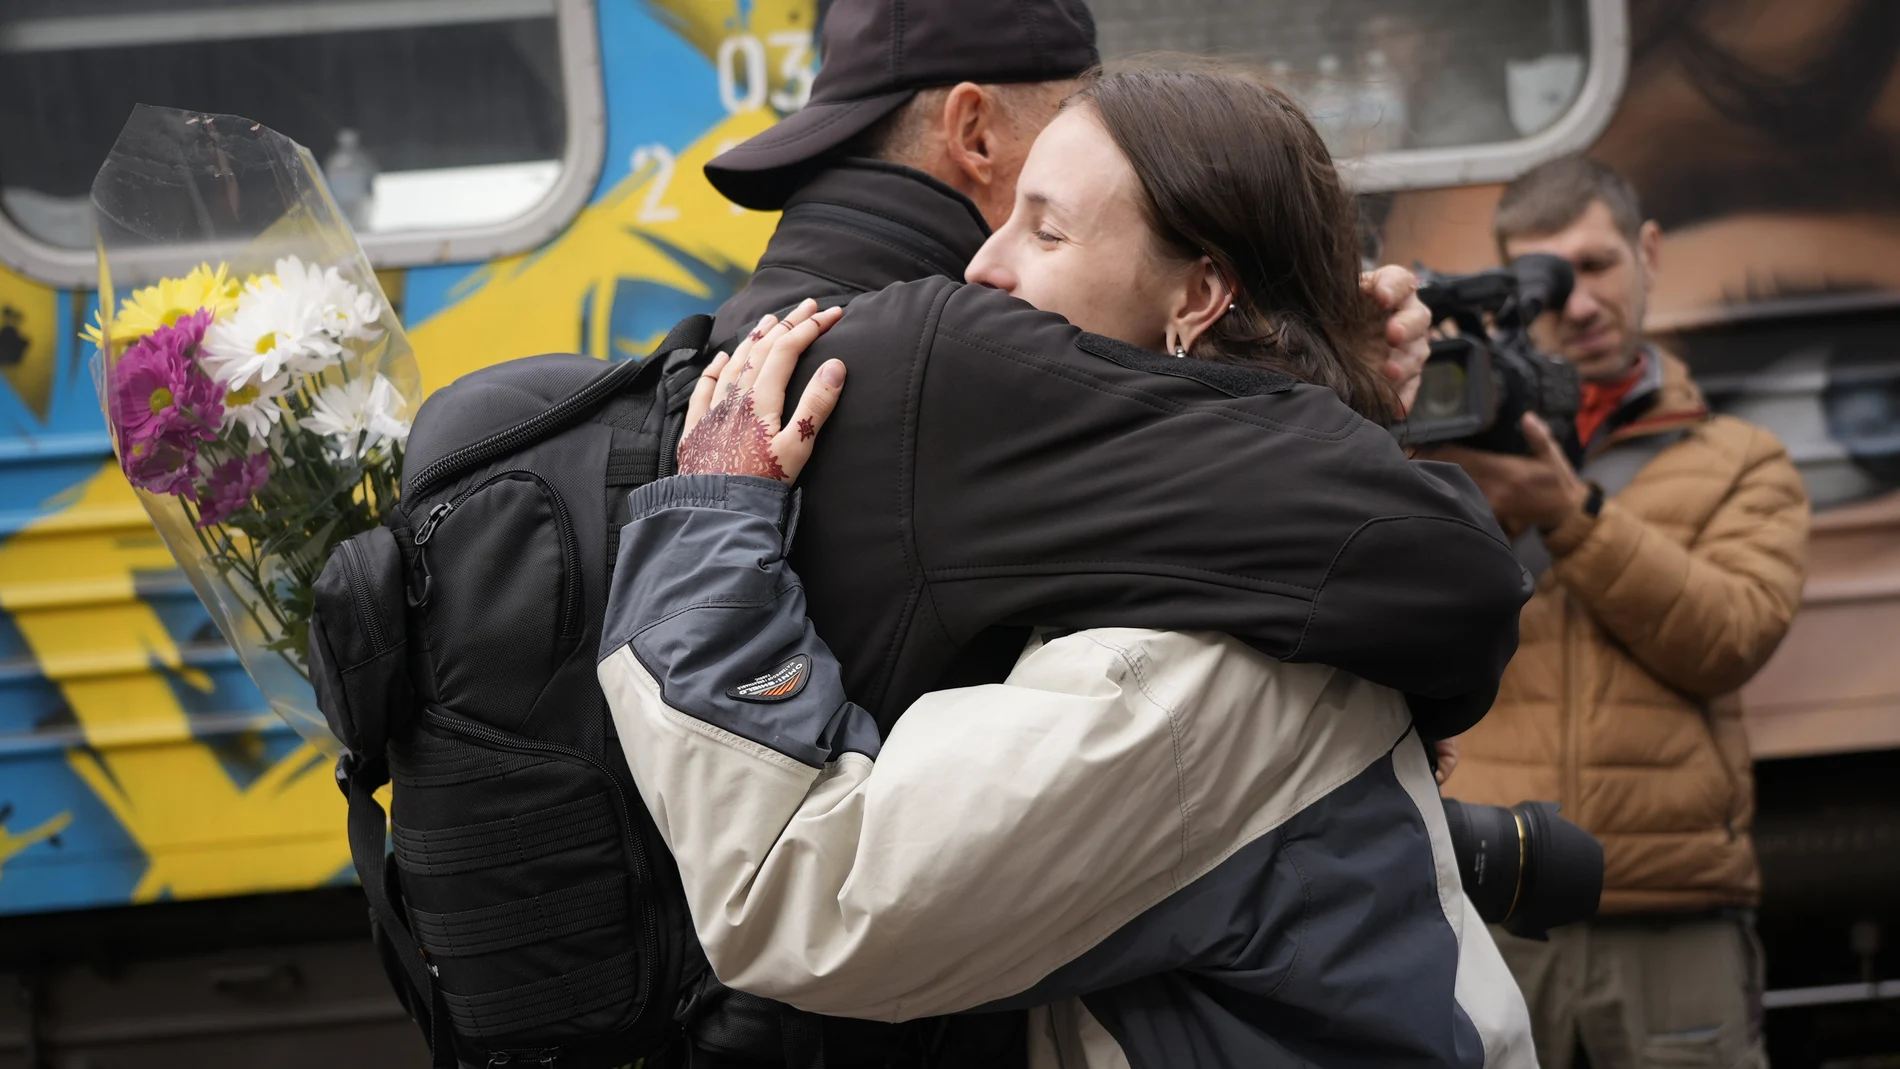 La gente se abraza a la llegada del primer tren de la capital Kyiv, después de que las tropas rusas se retiraran de la ciudad de Jersón